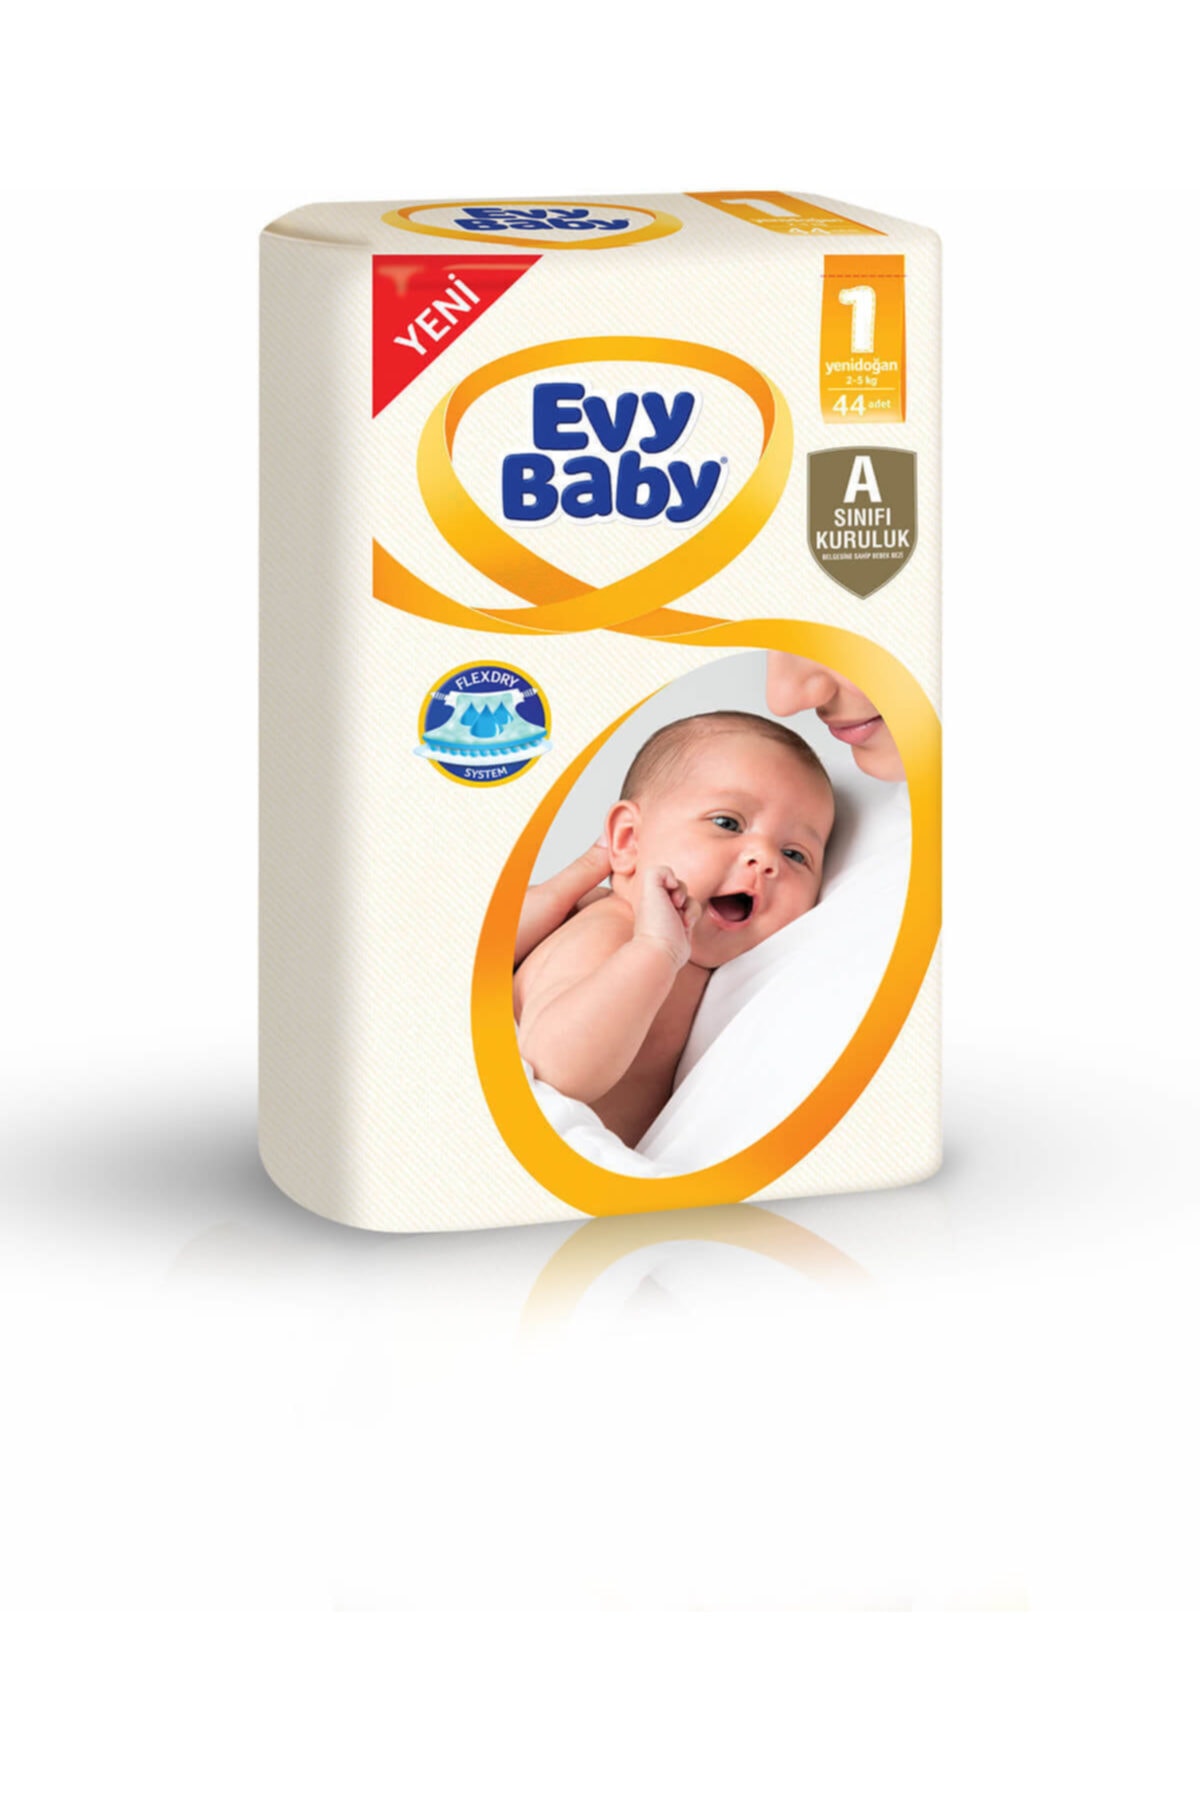 Evy Baby Bebek Bezi Yenidoğan 1 Beden 1 Beden Jumbo 44 Adet